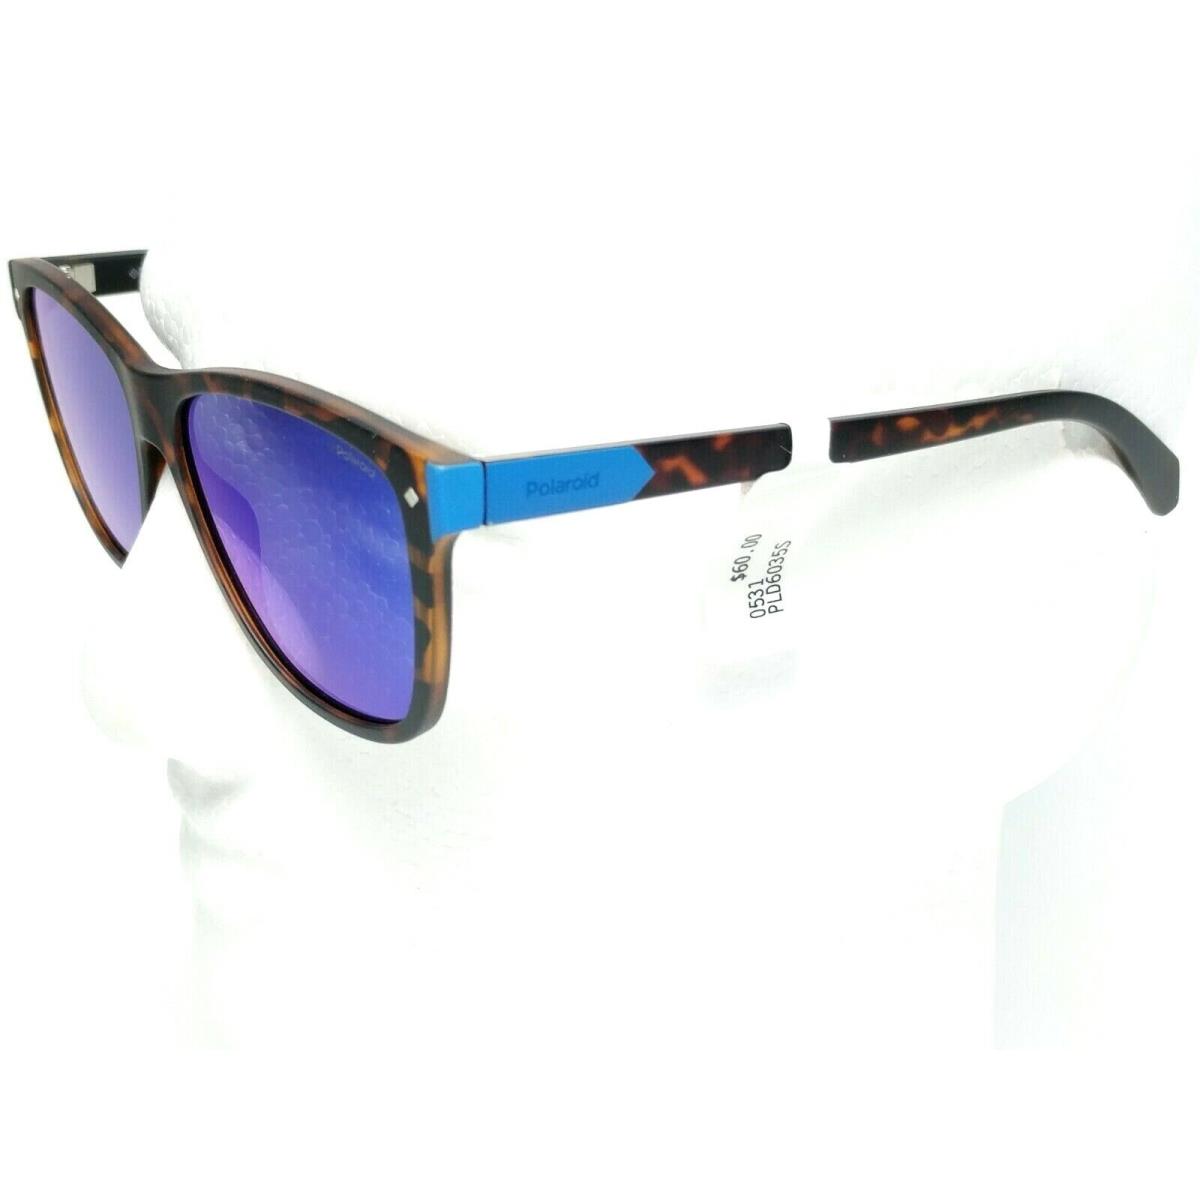 Polaroid sunglasses  - Brown Frame, Blue Lens